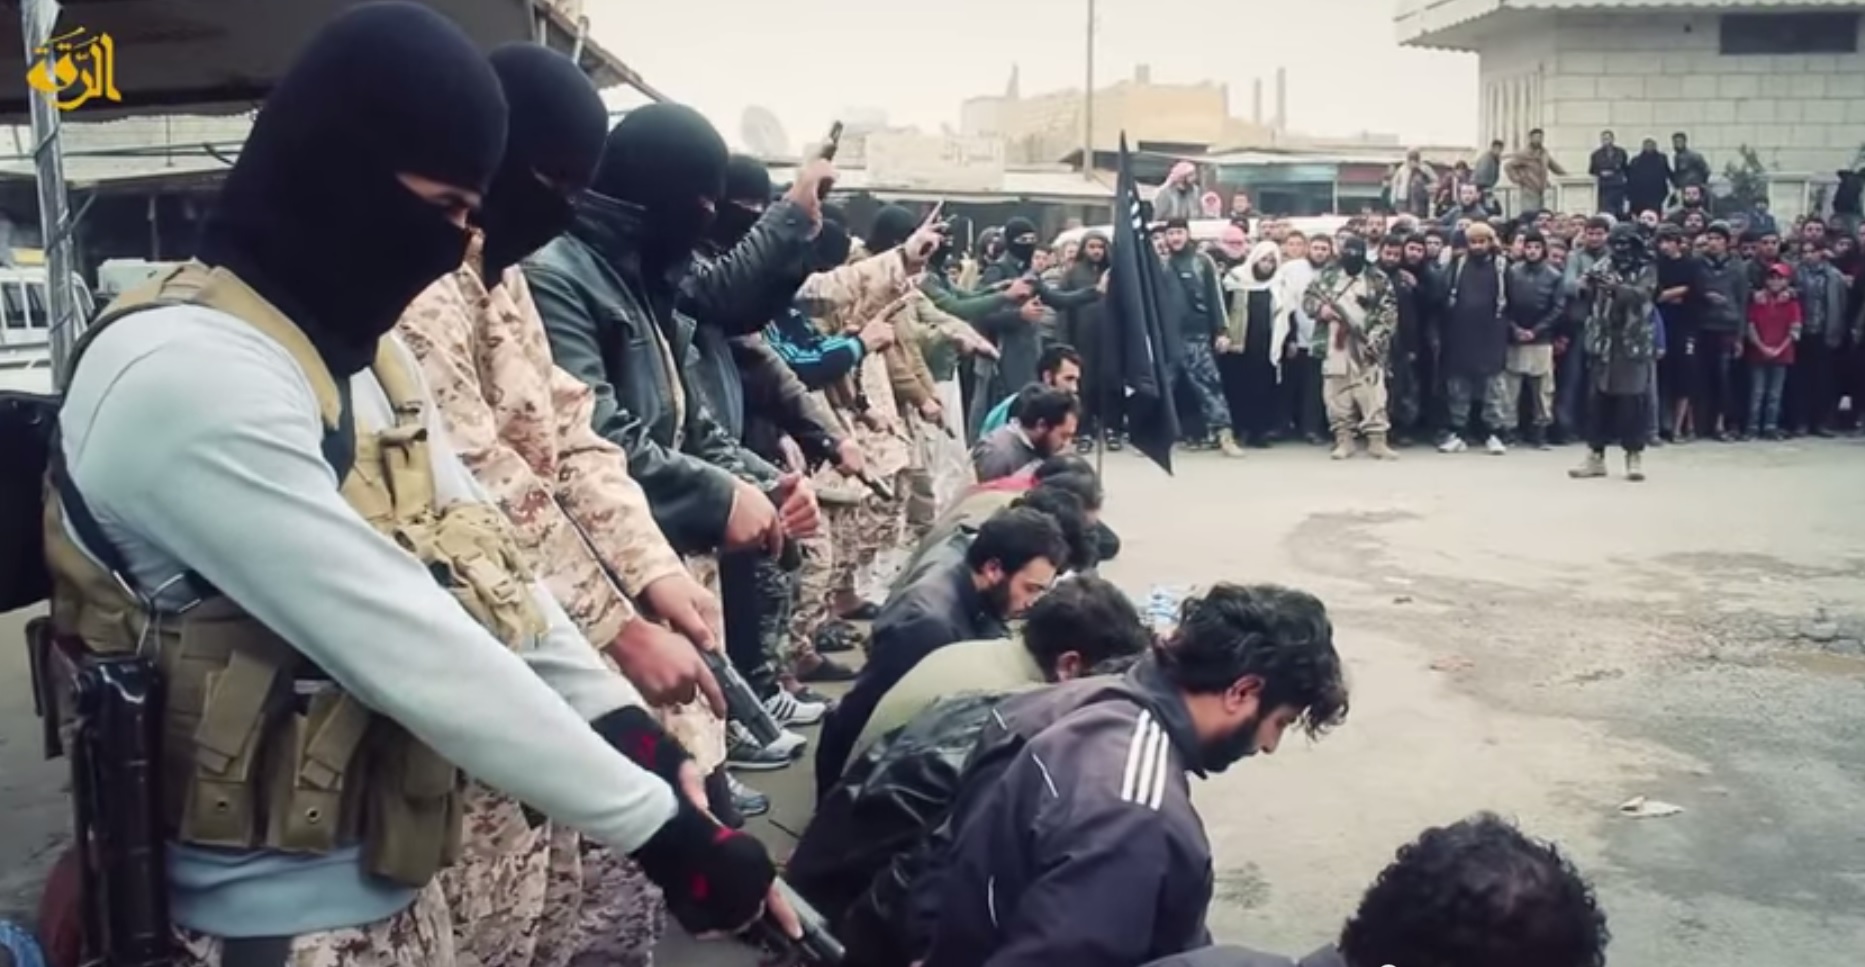 פעילי דאעש בטקס הוצאה להורג בא-רקה שבסוריה